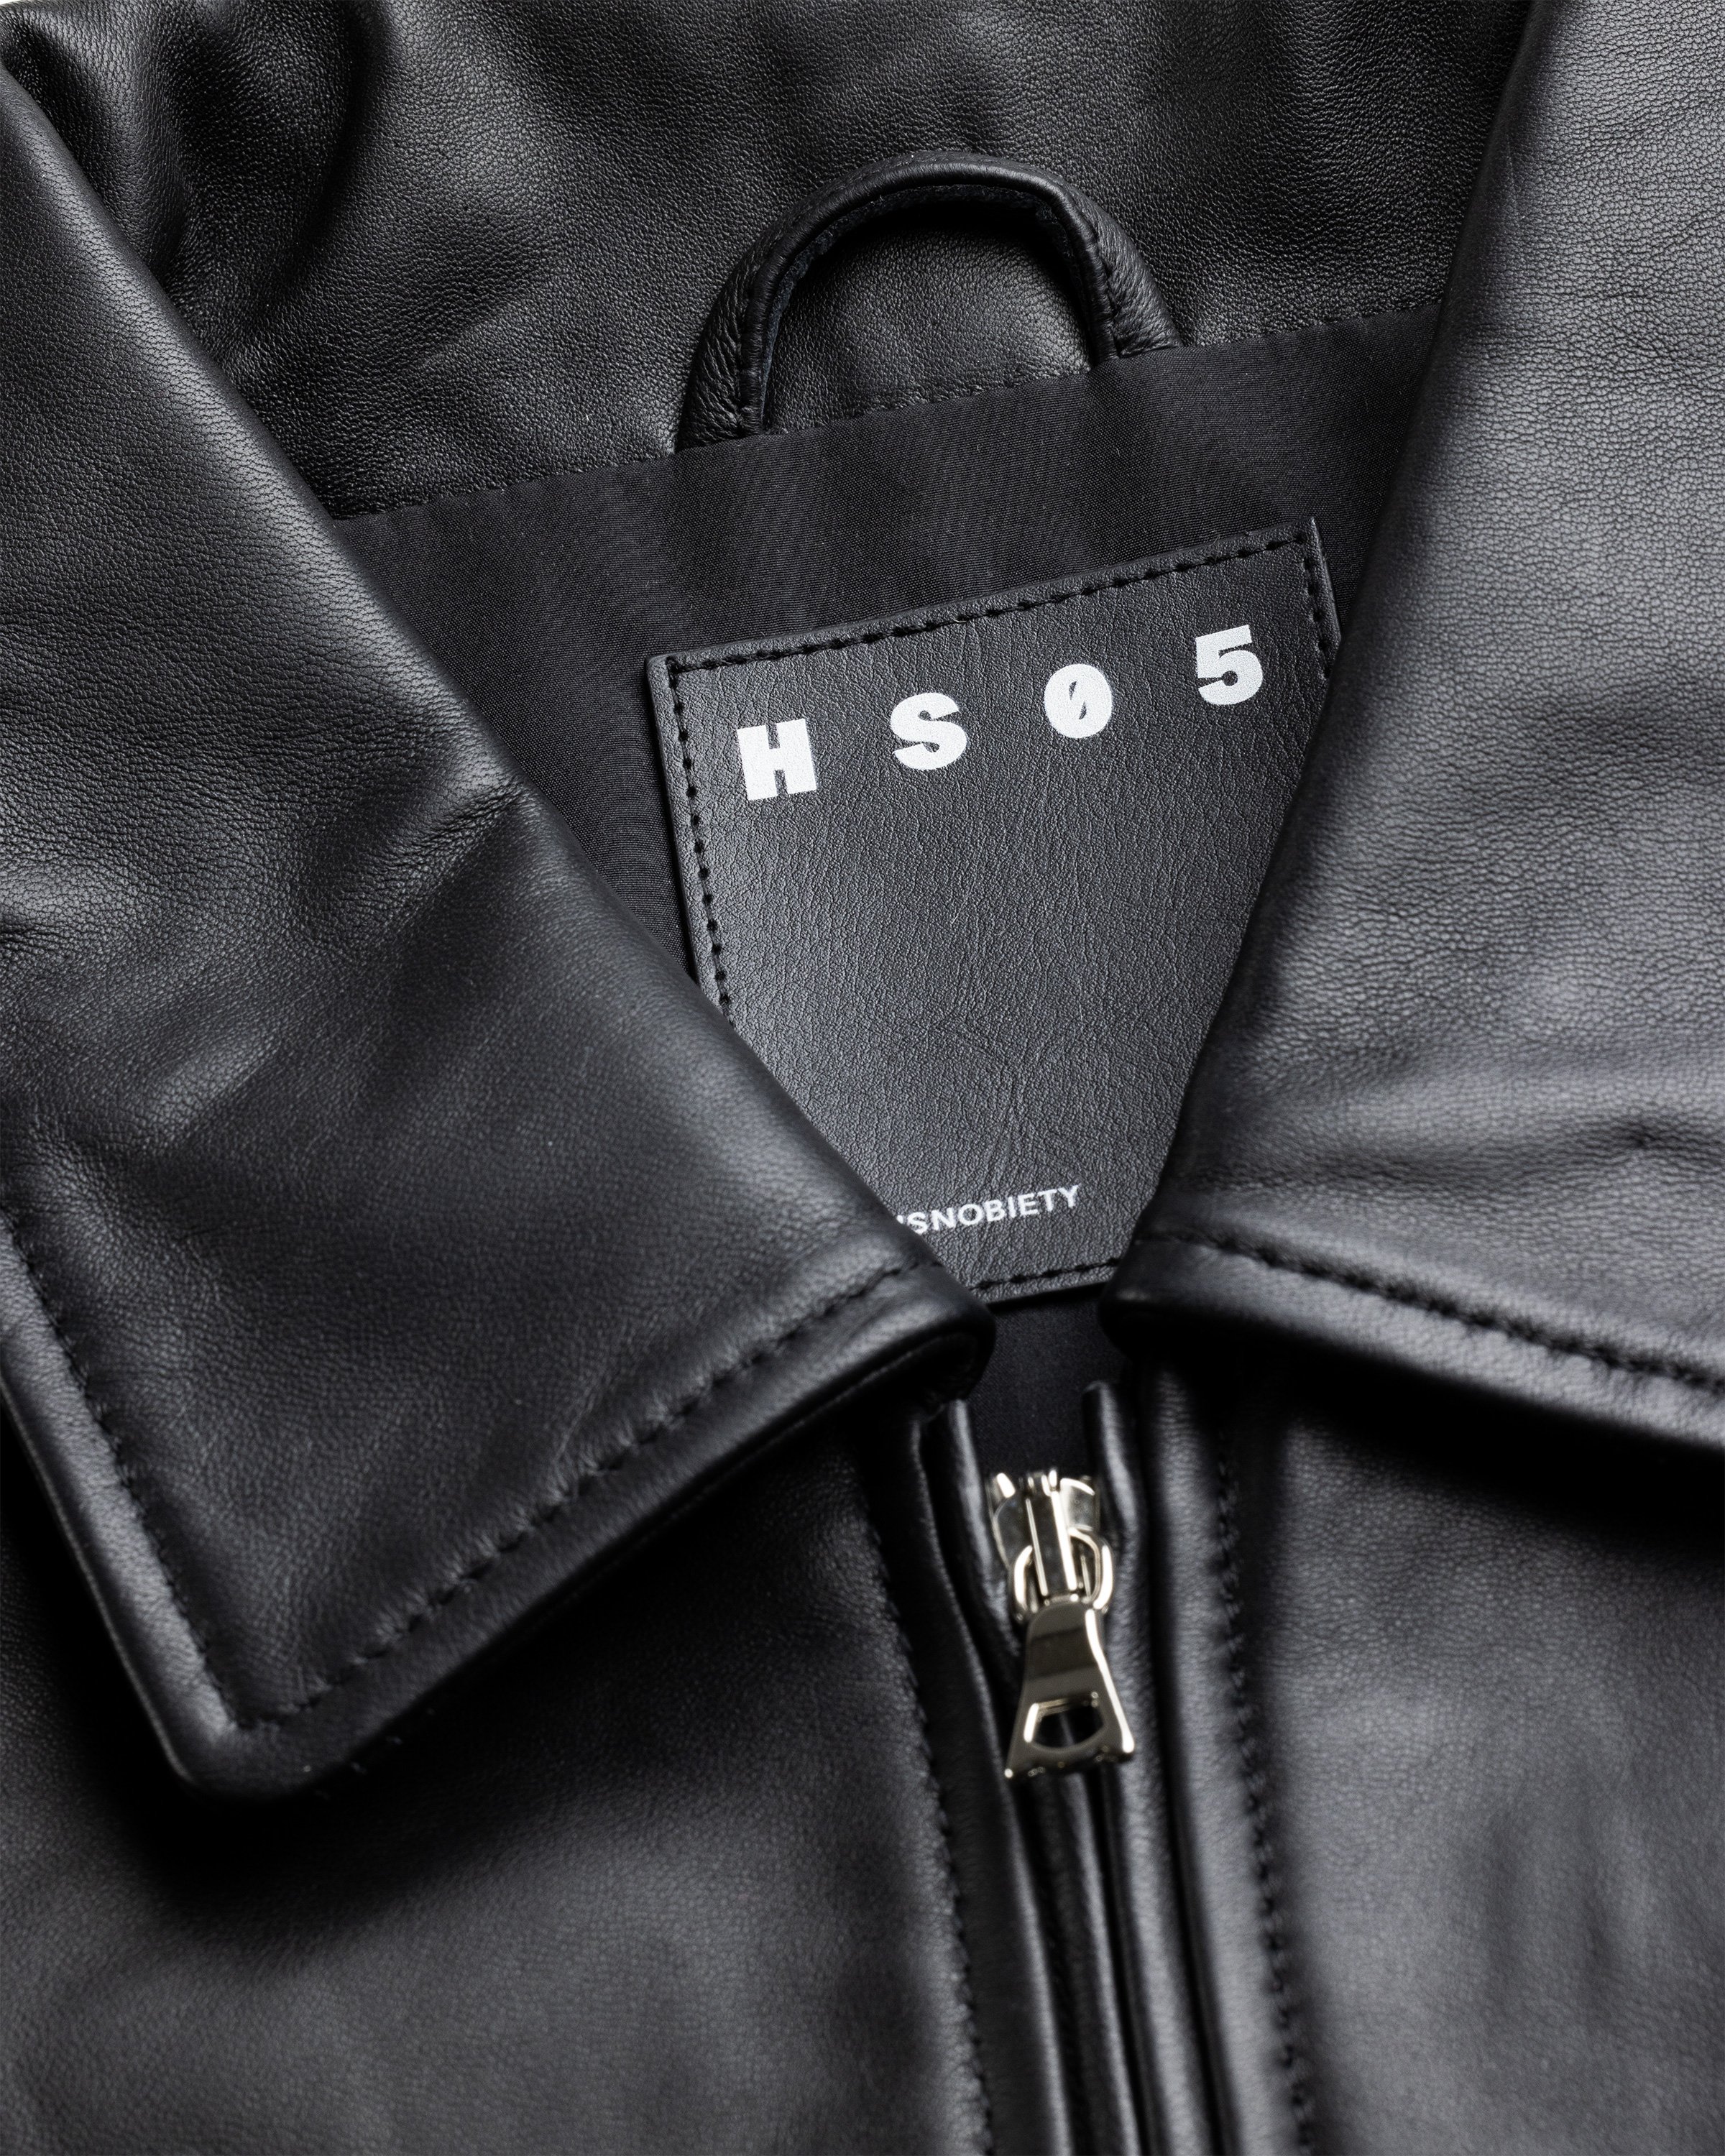 Highsnobiety HS05 - Leather Jacket Black - Clothing - Black - Image 8